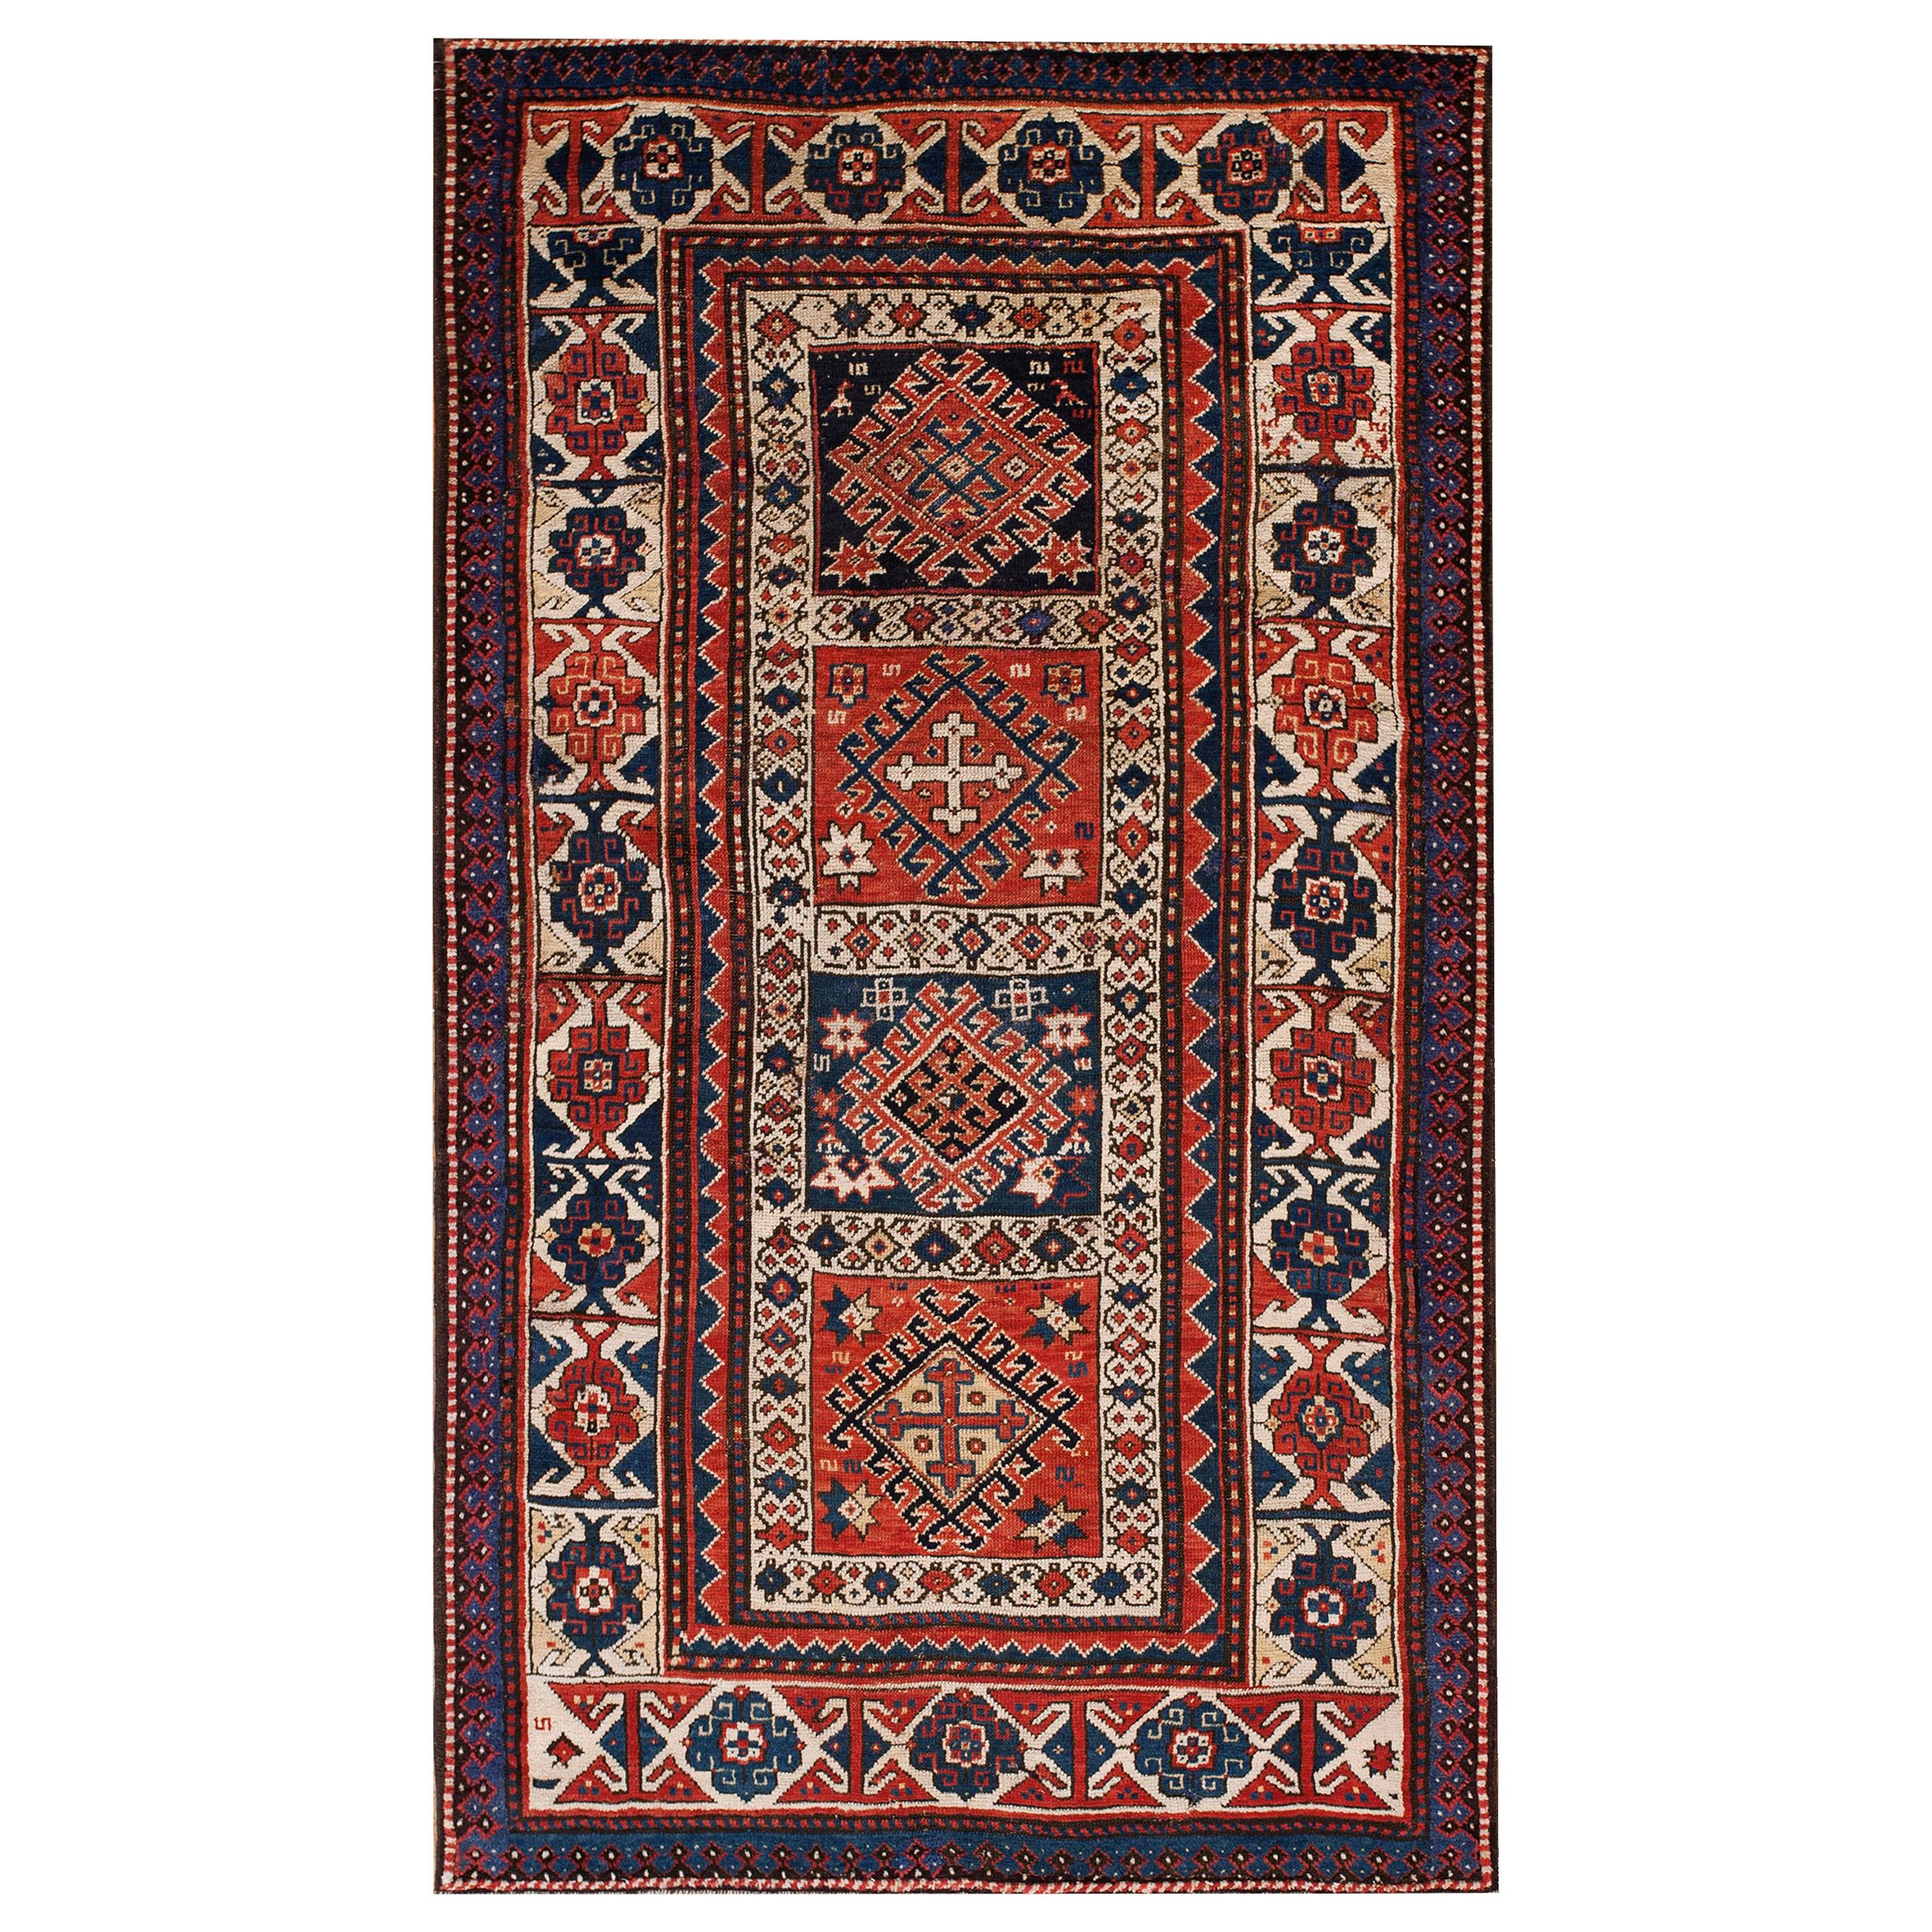 19th Century Caucasian Kazak Carpet ( 3'8" x 6'9" - 112 x 206 )